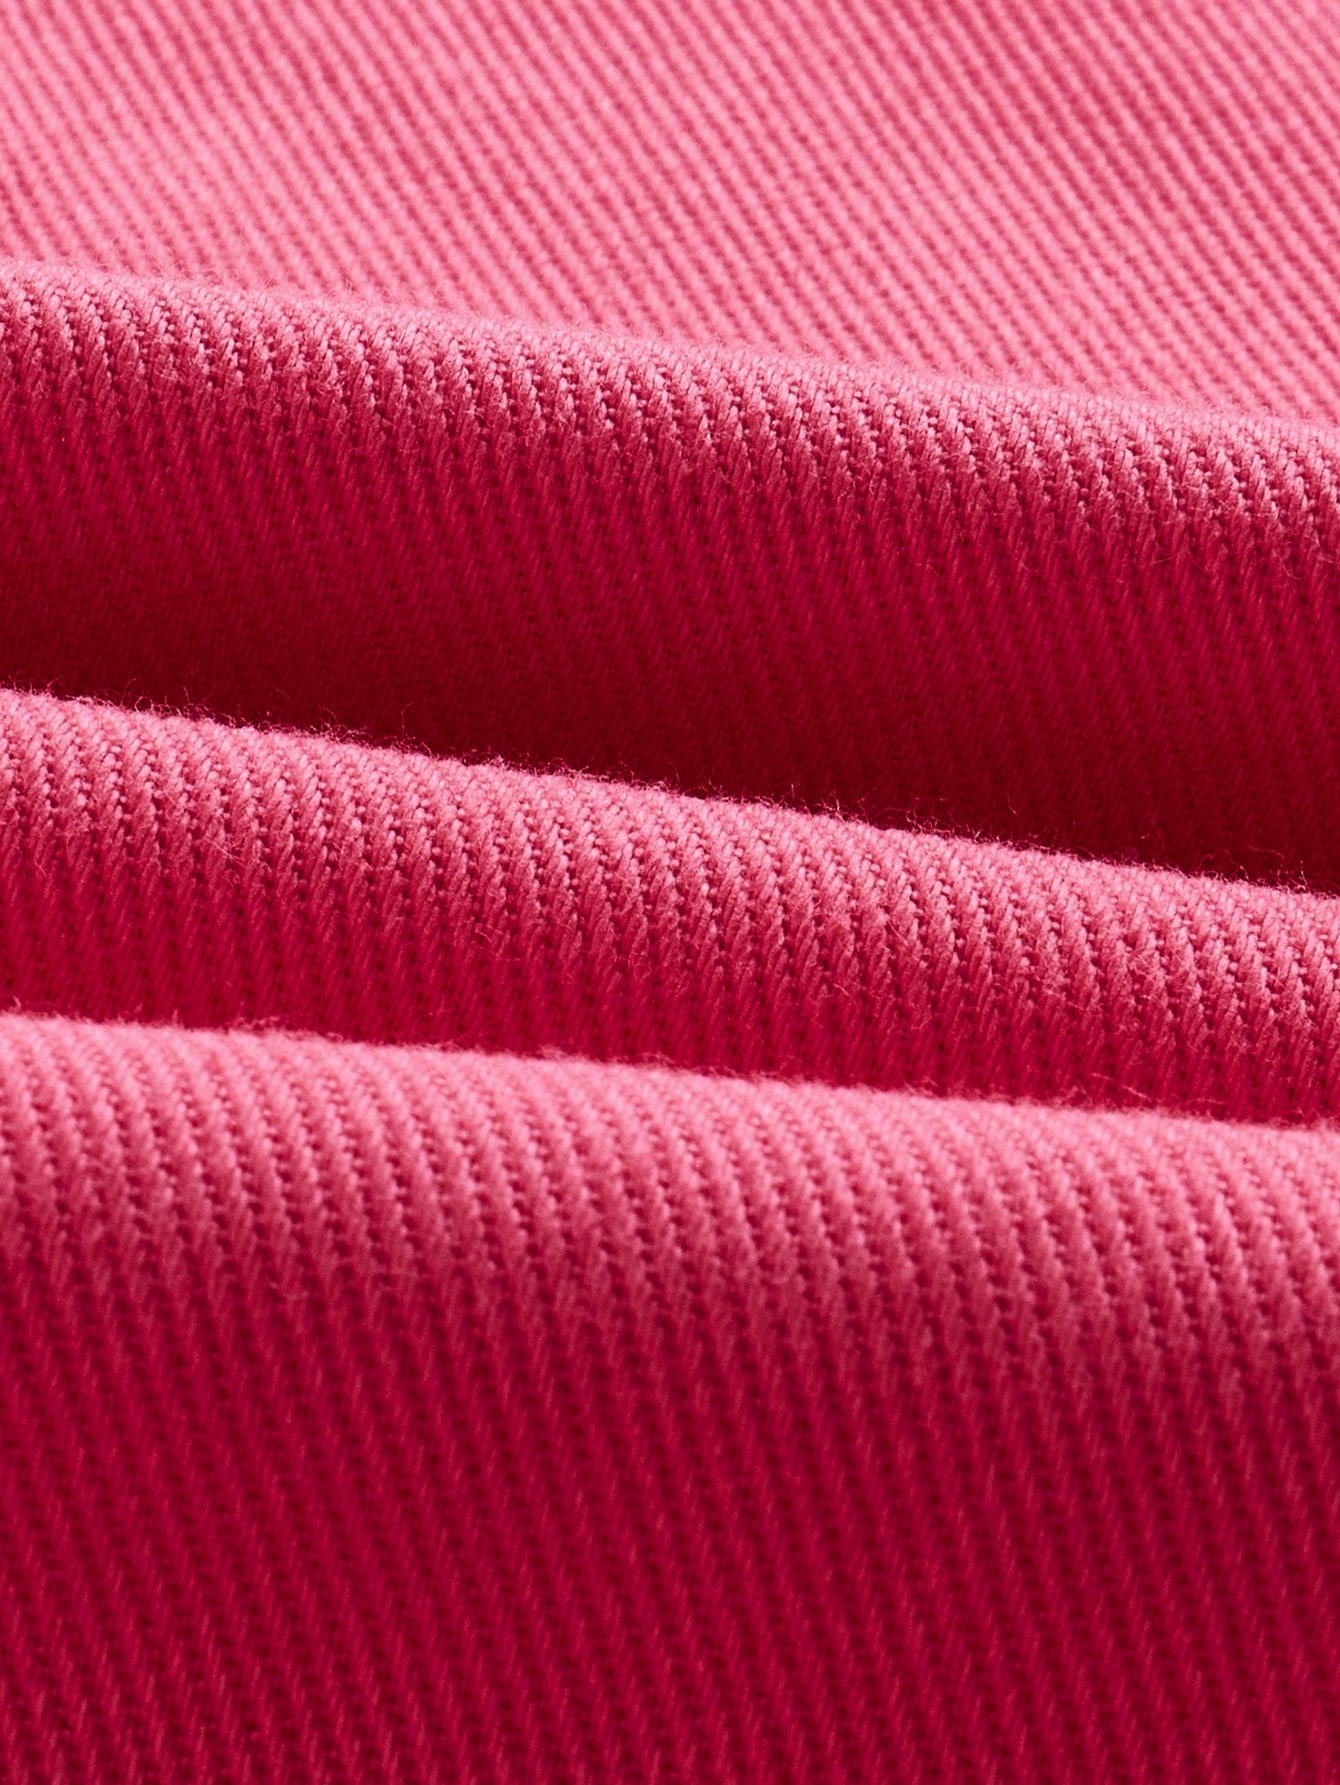 ダイバーシティ 冒険的 ジャンプスーツ サマーウェア ストラップレス ピンク色 カーゴパンツ